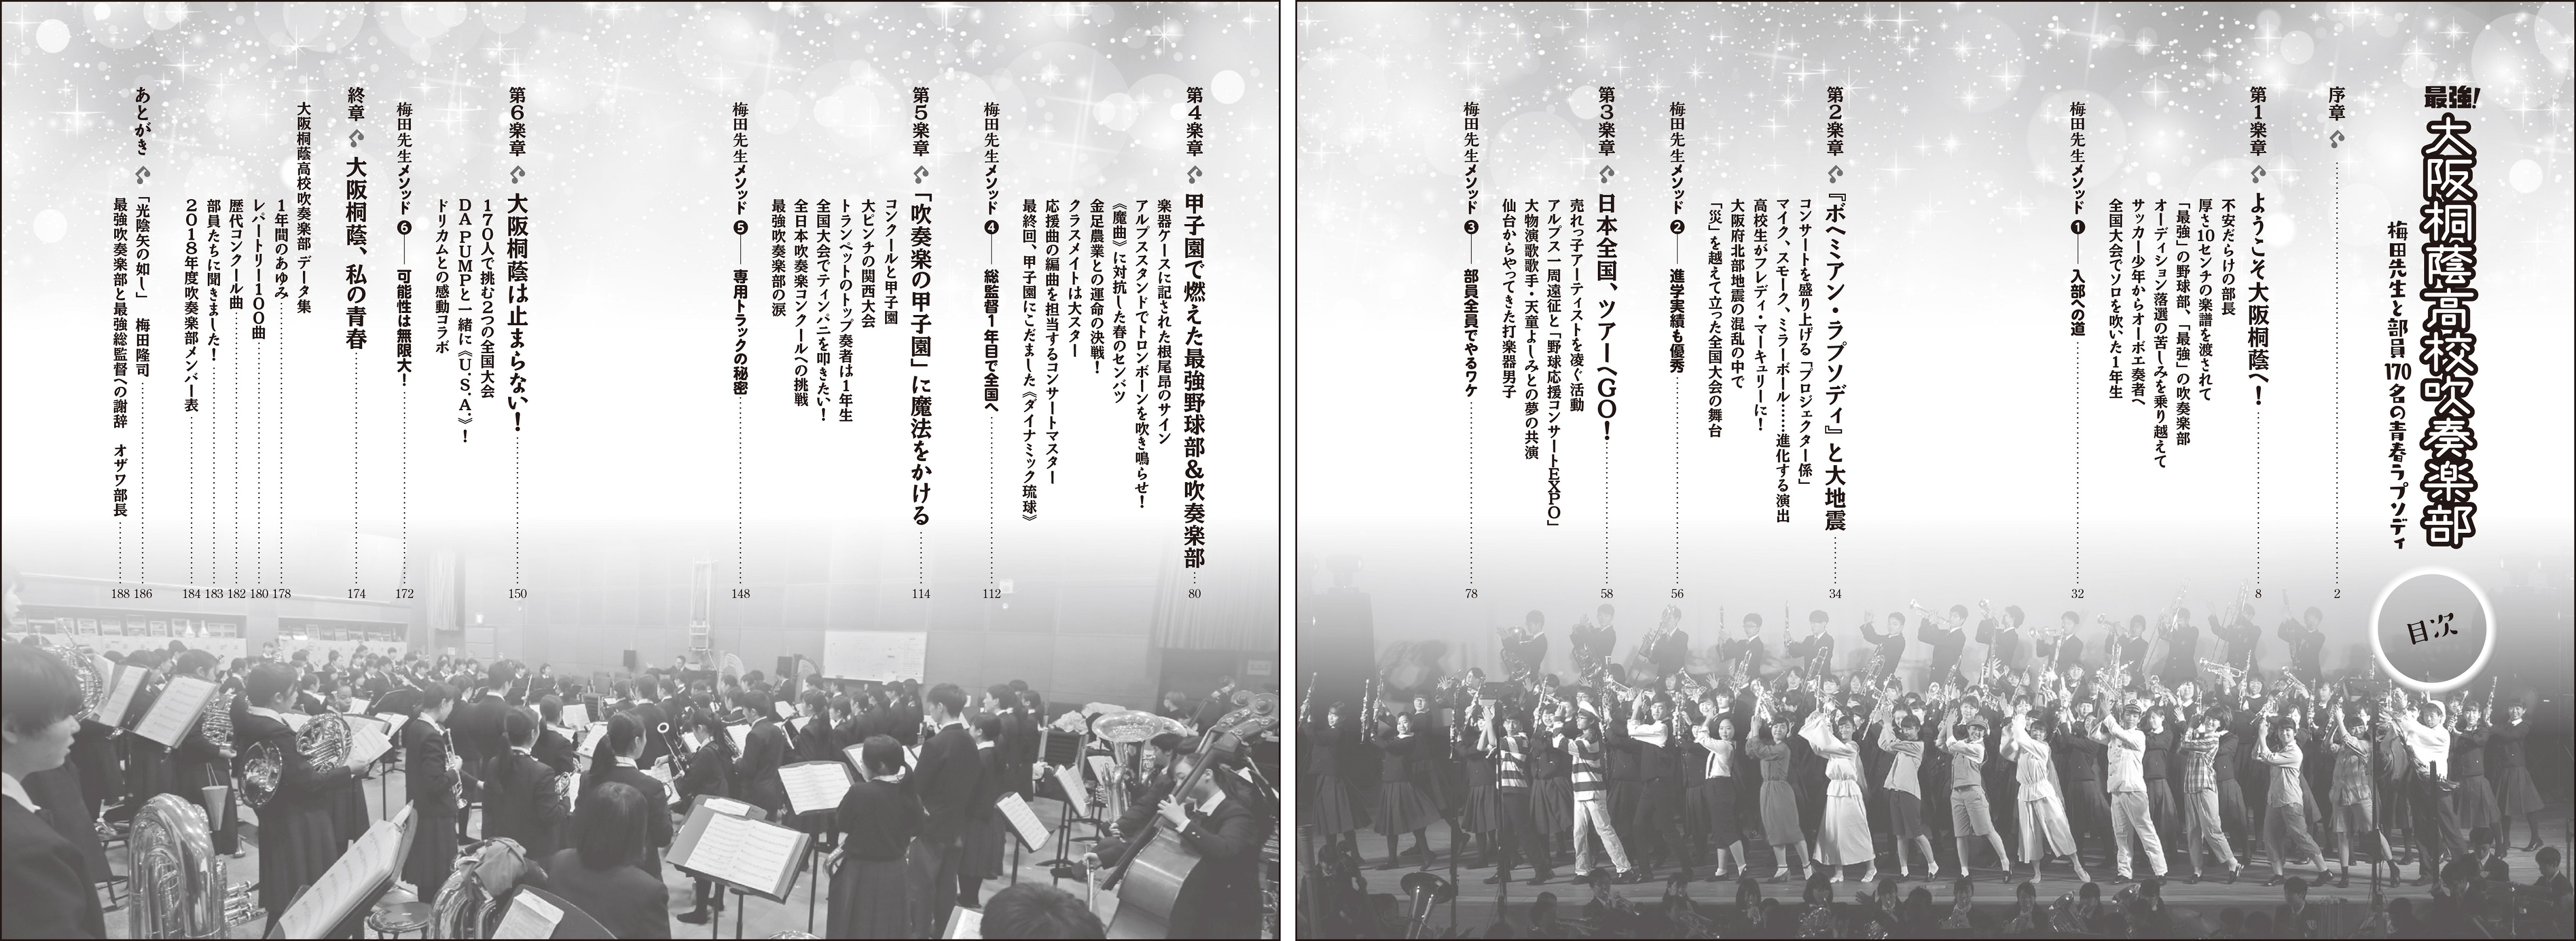 こんな吹奏楽部 見たことない 大阪桐蔭高校吹奏楽部の 驚きと感動のドキュメンタリー 学研プラス公式ブログ